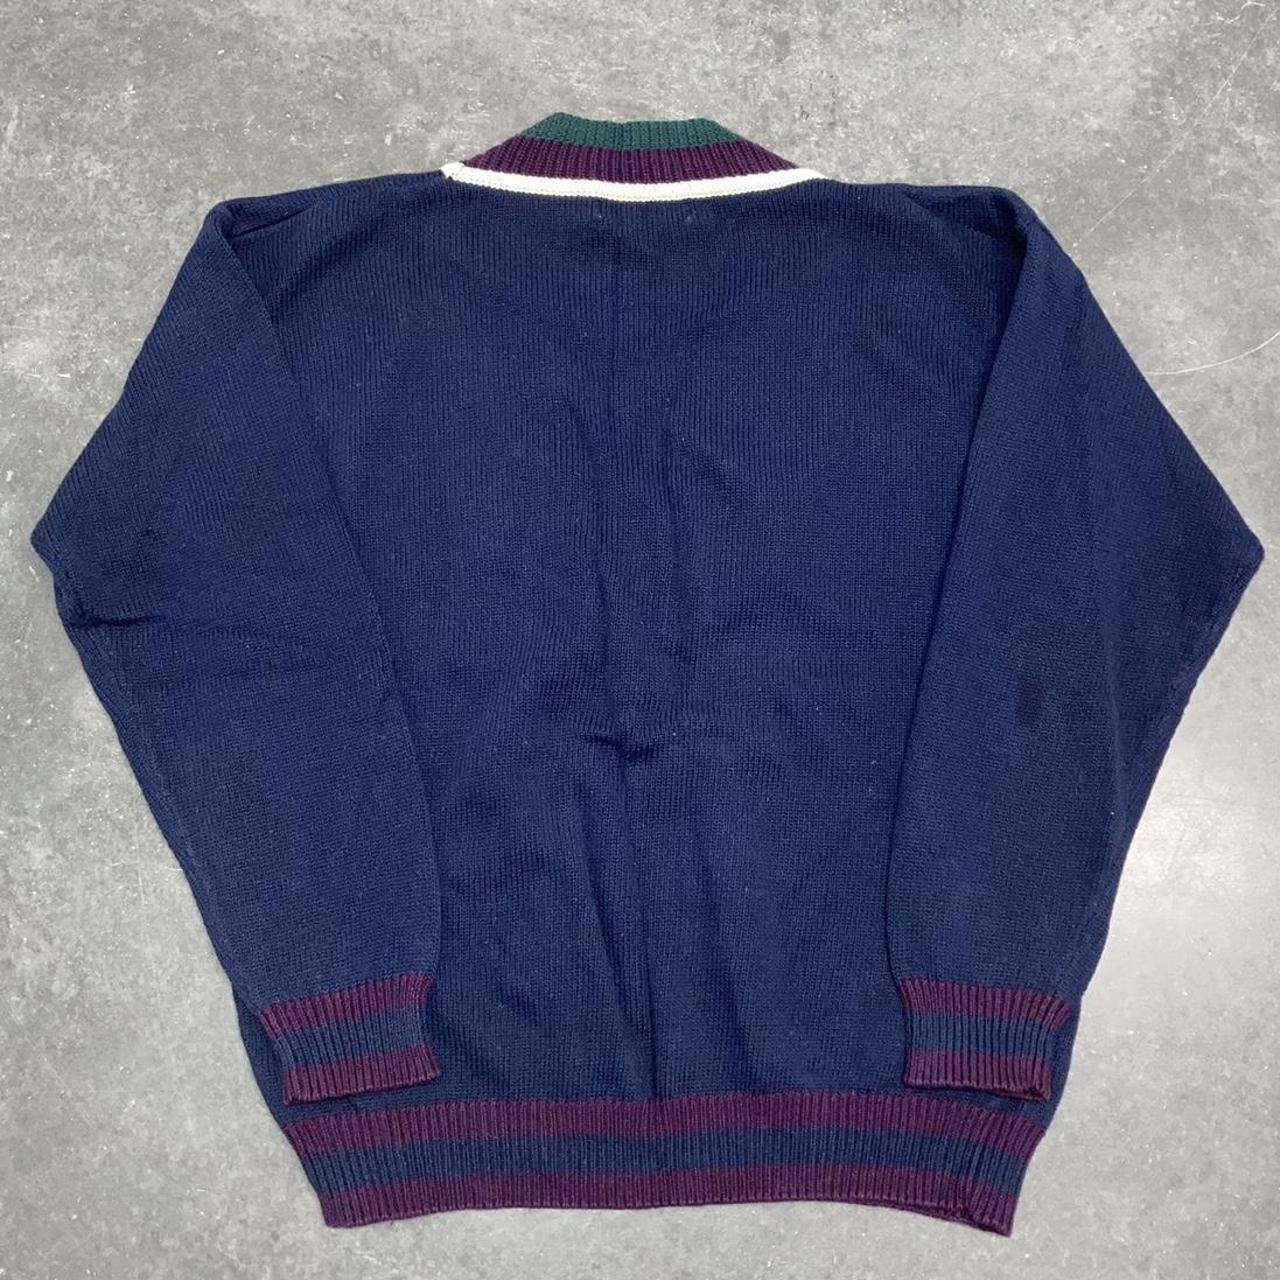 Vintage Bugle Boy Knit Sweater. Vintage V-Neck Knit... - Depop